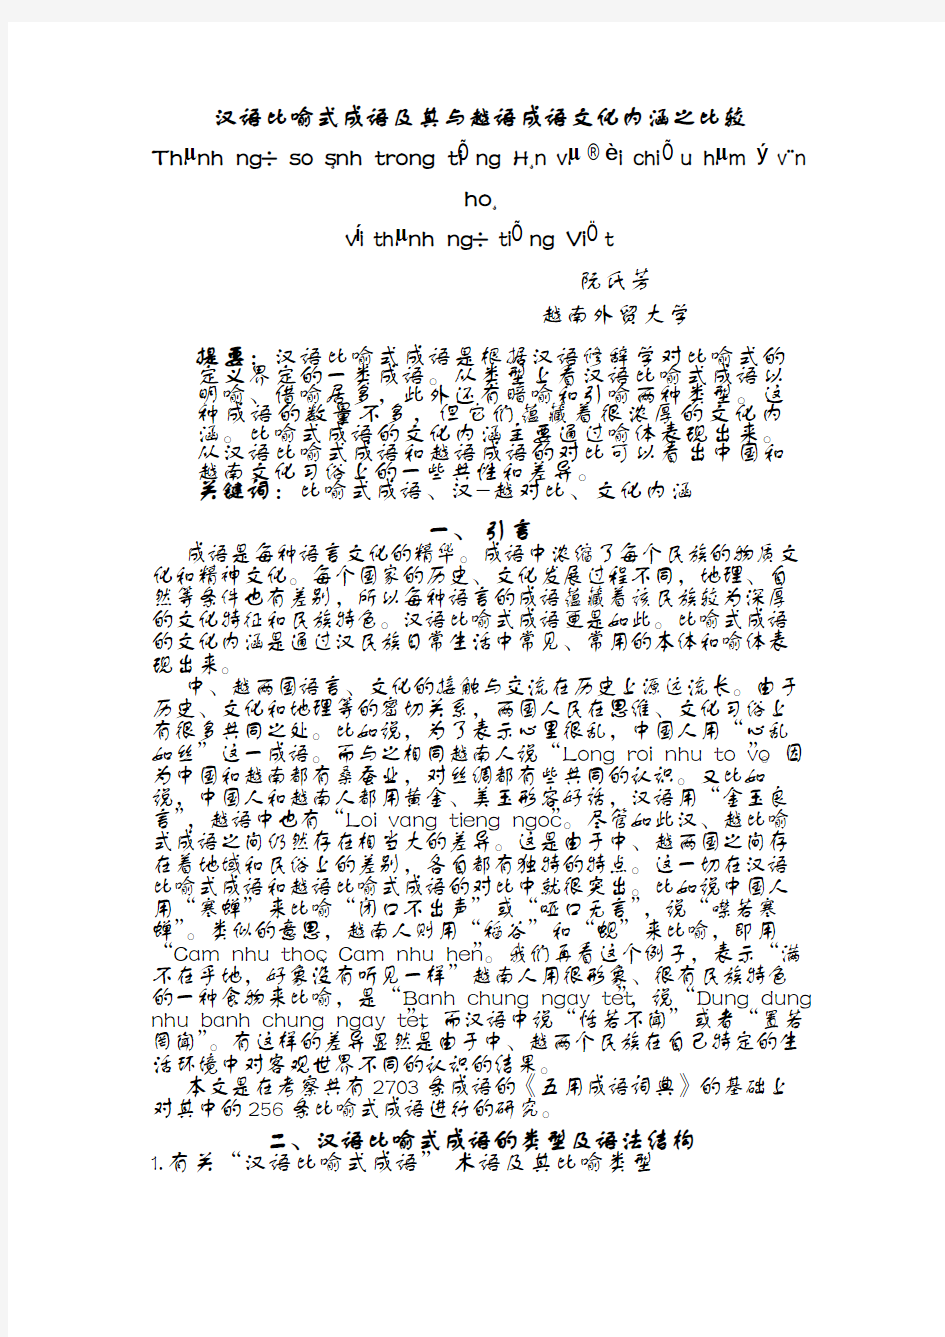 汉语比喻式成语及其与越语成语文化内涵之比较-ULIS